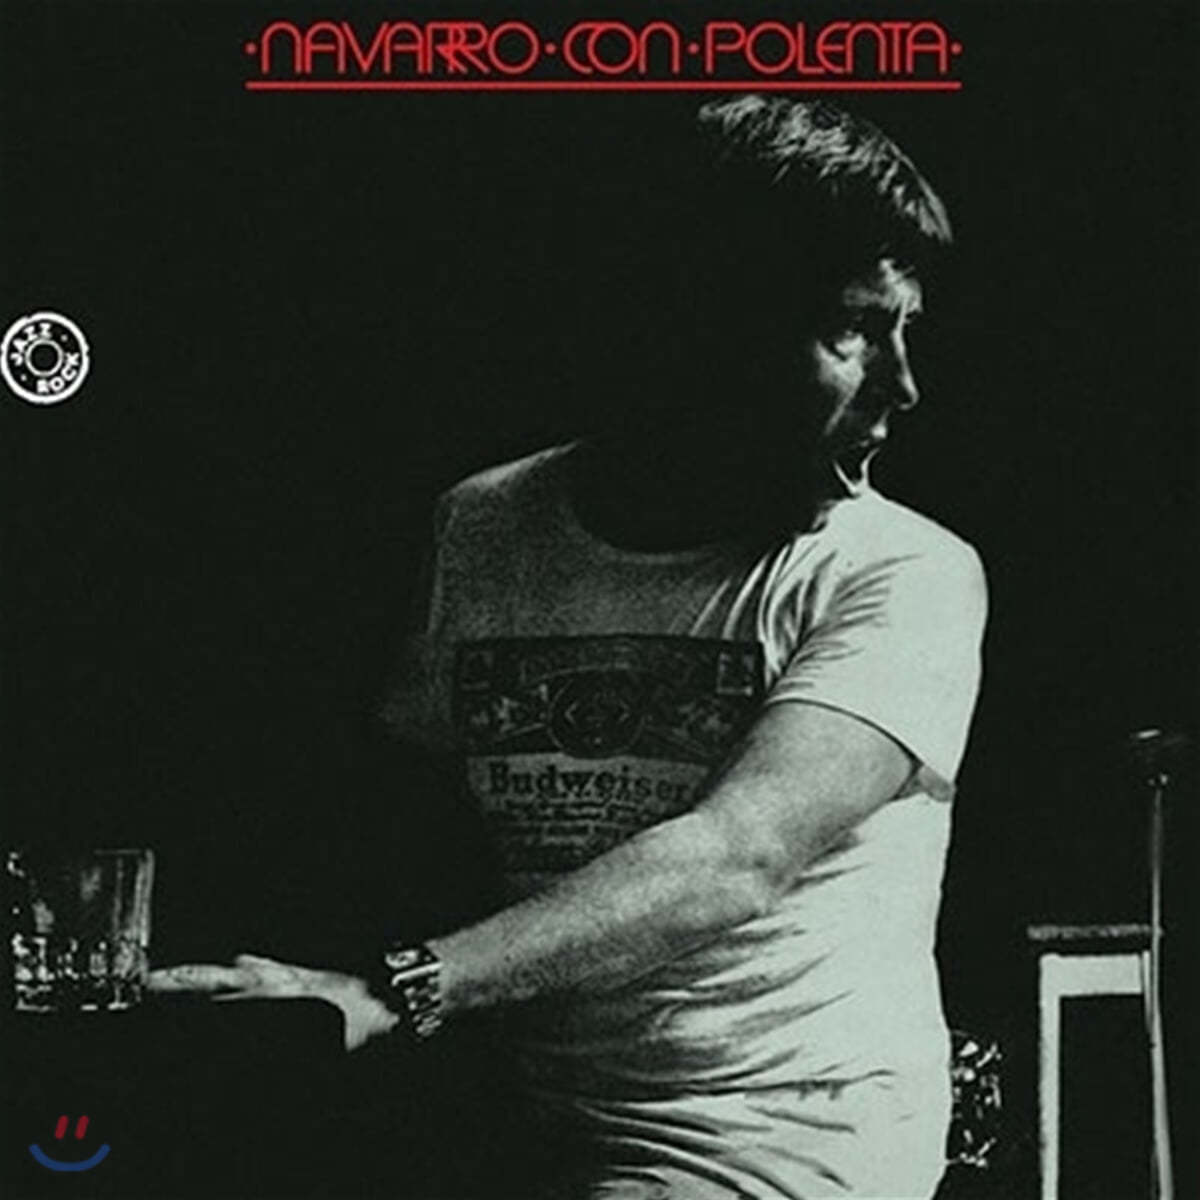 Jorge Navarro (호르헤 나바로) - Navarro Con Polenta [LP] 